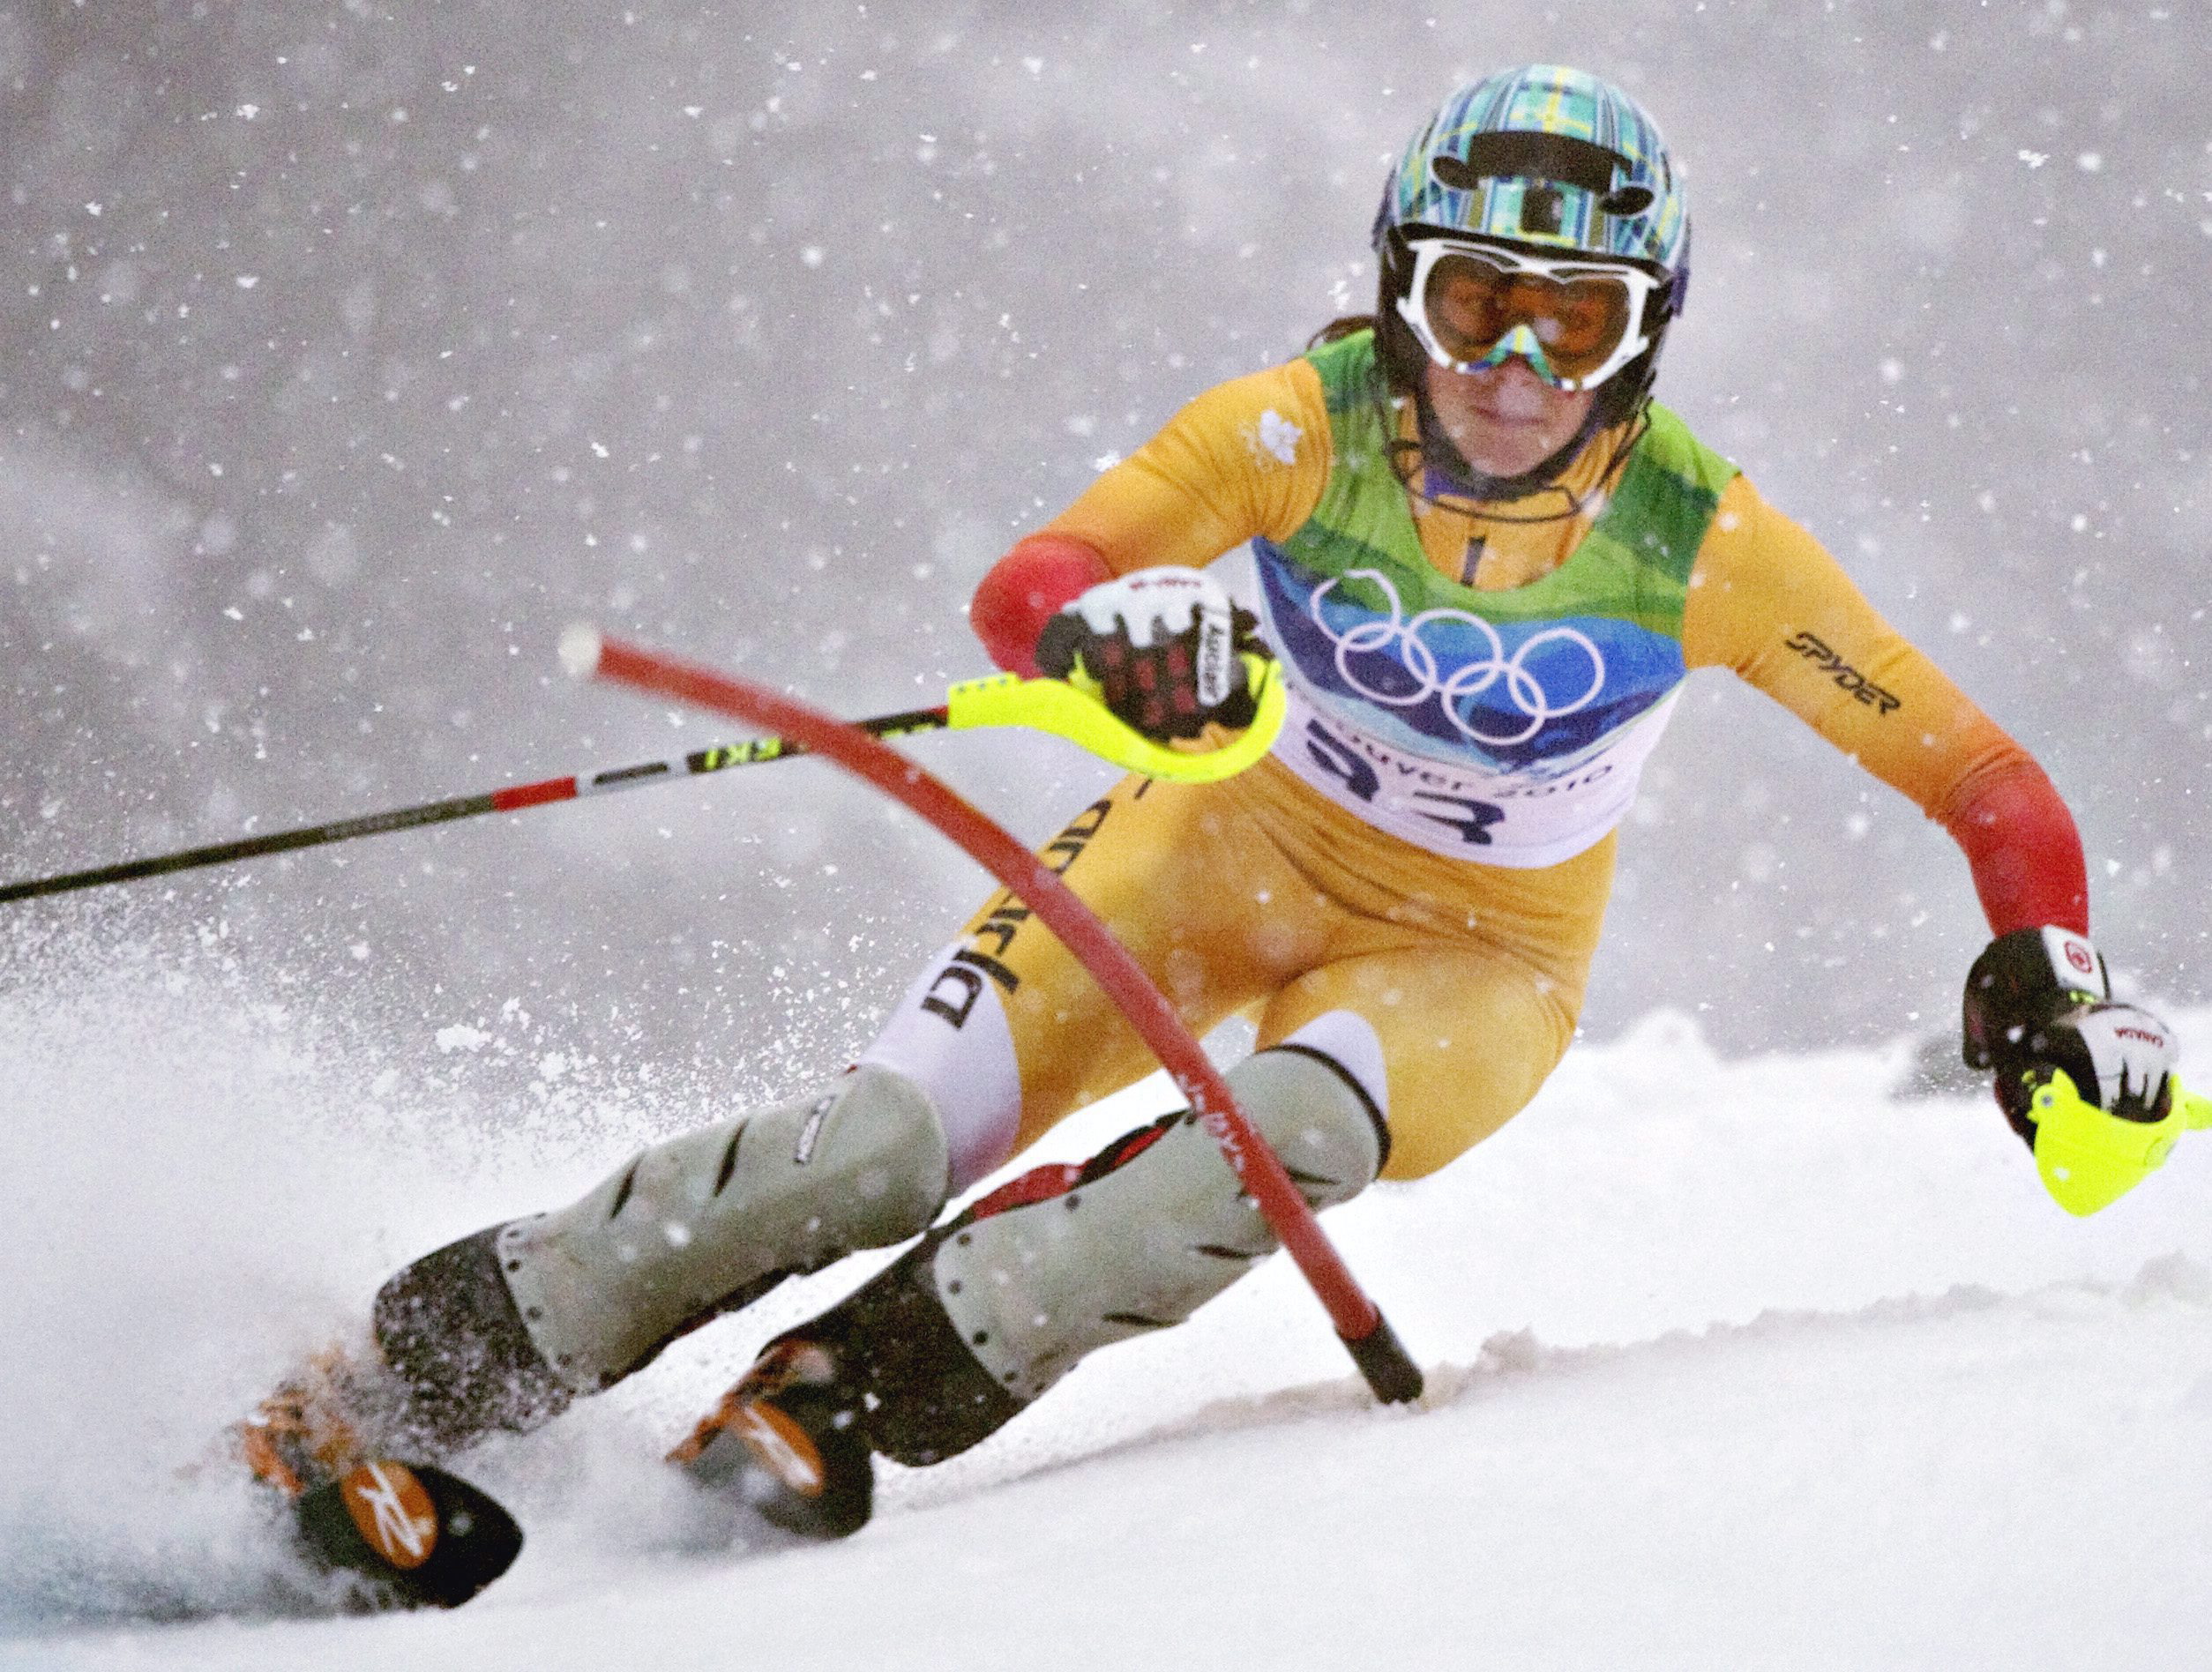 An alpine skier goes around a slalom gate